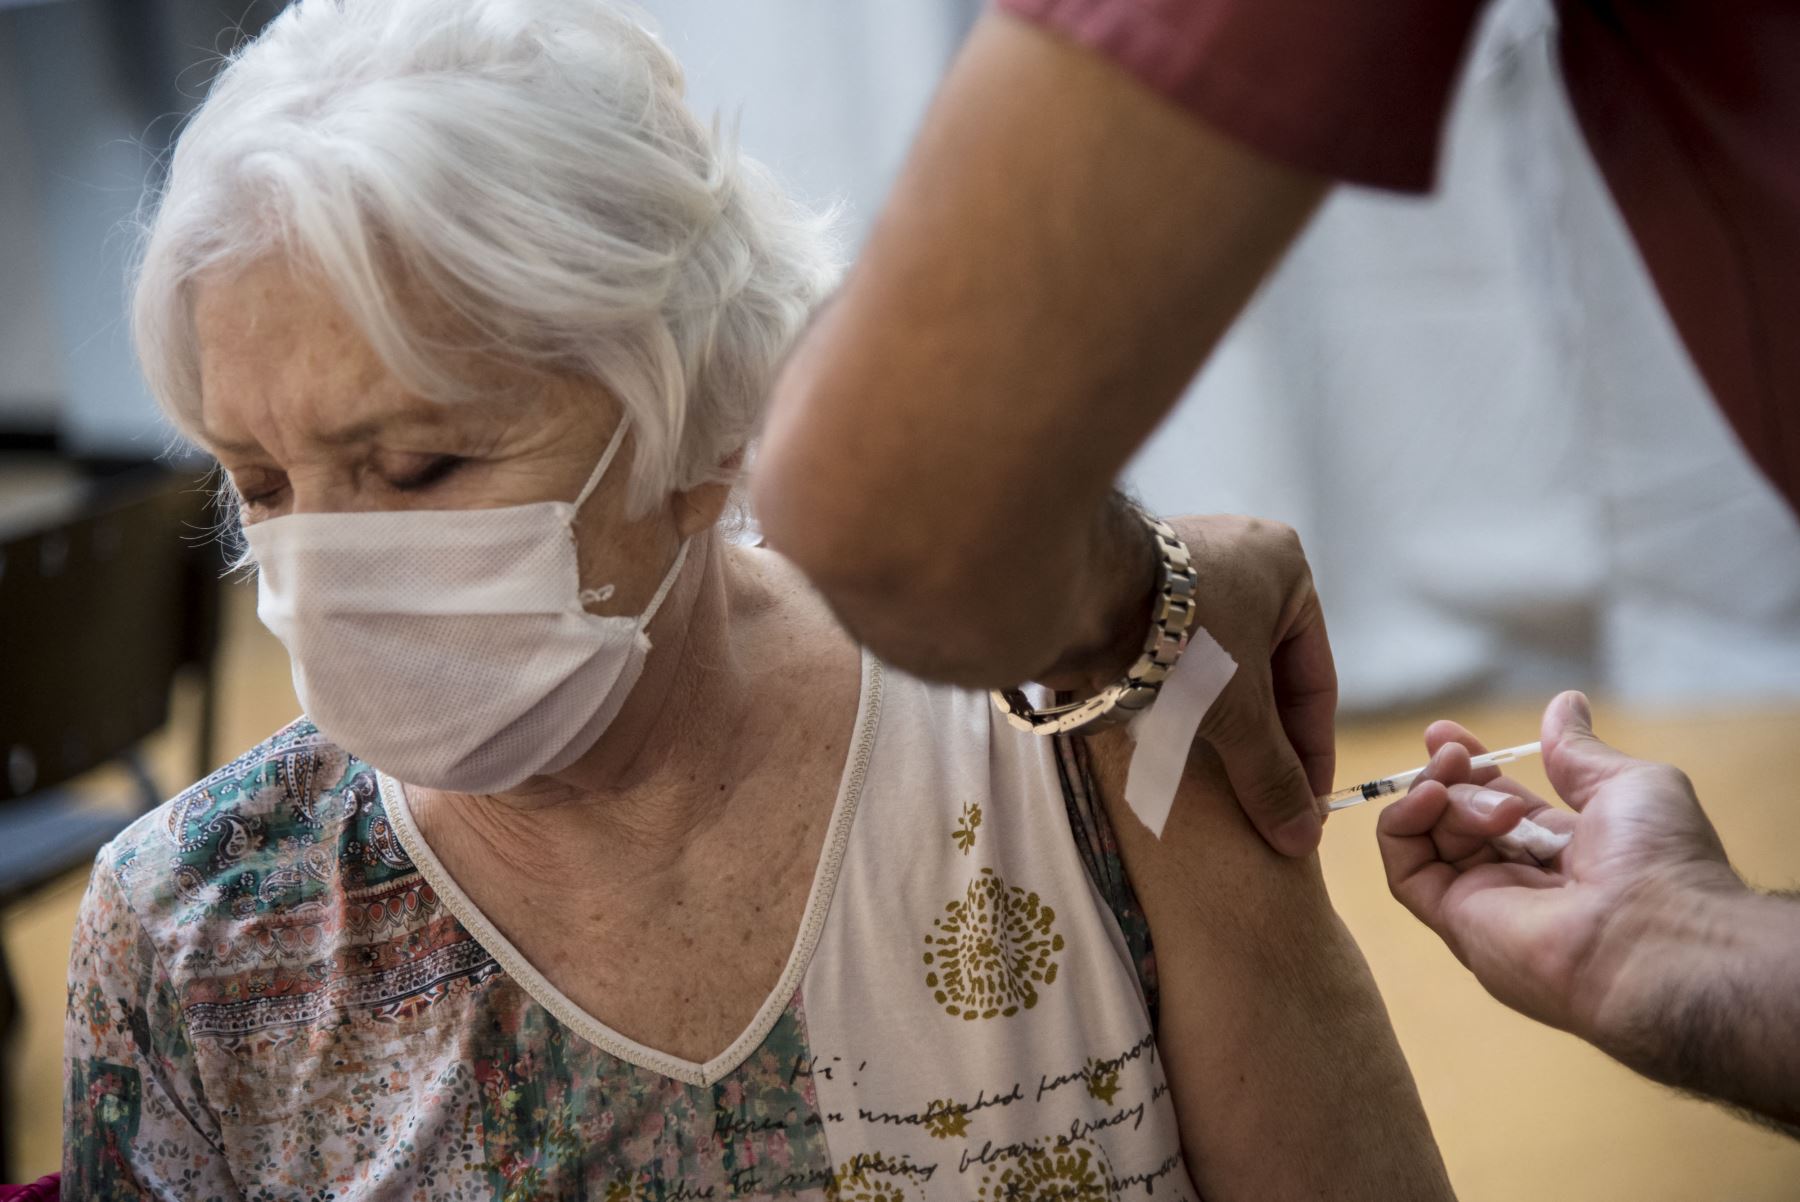 El plan de vacunación prioriza al personal sanitario, docentes, estratégicos del Estado y adultos por rango de edad. Foto: AFP